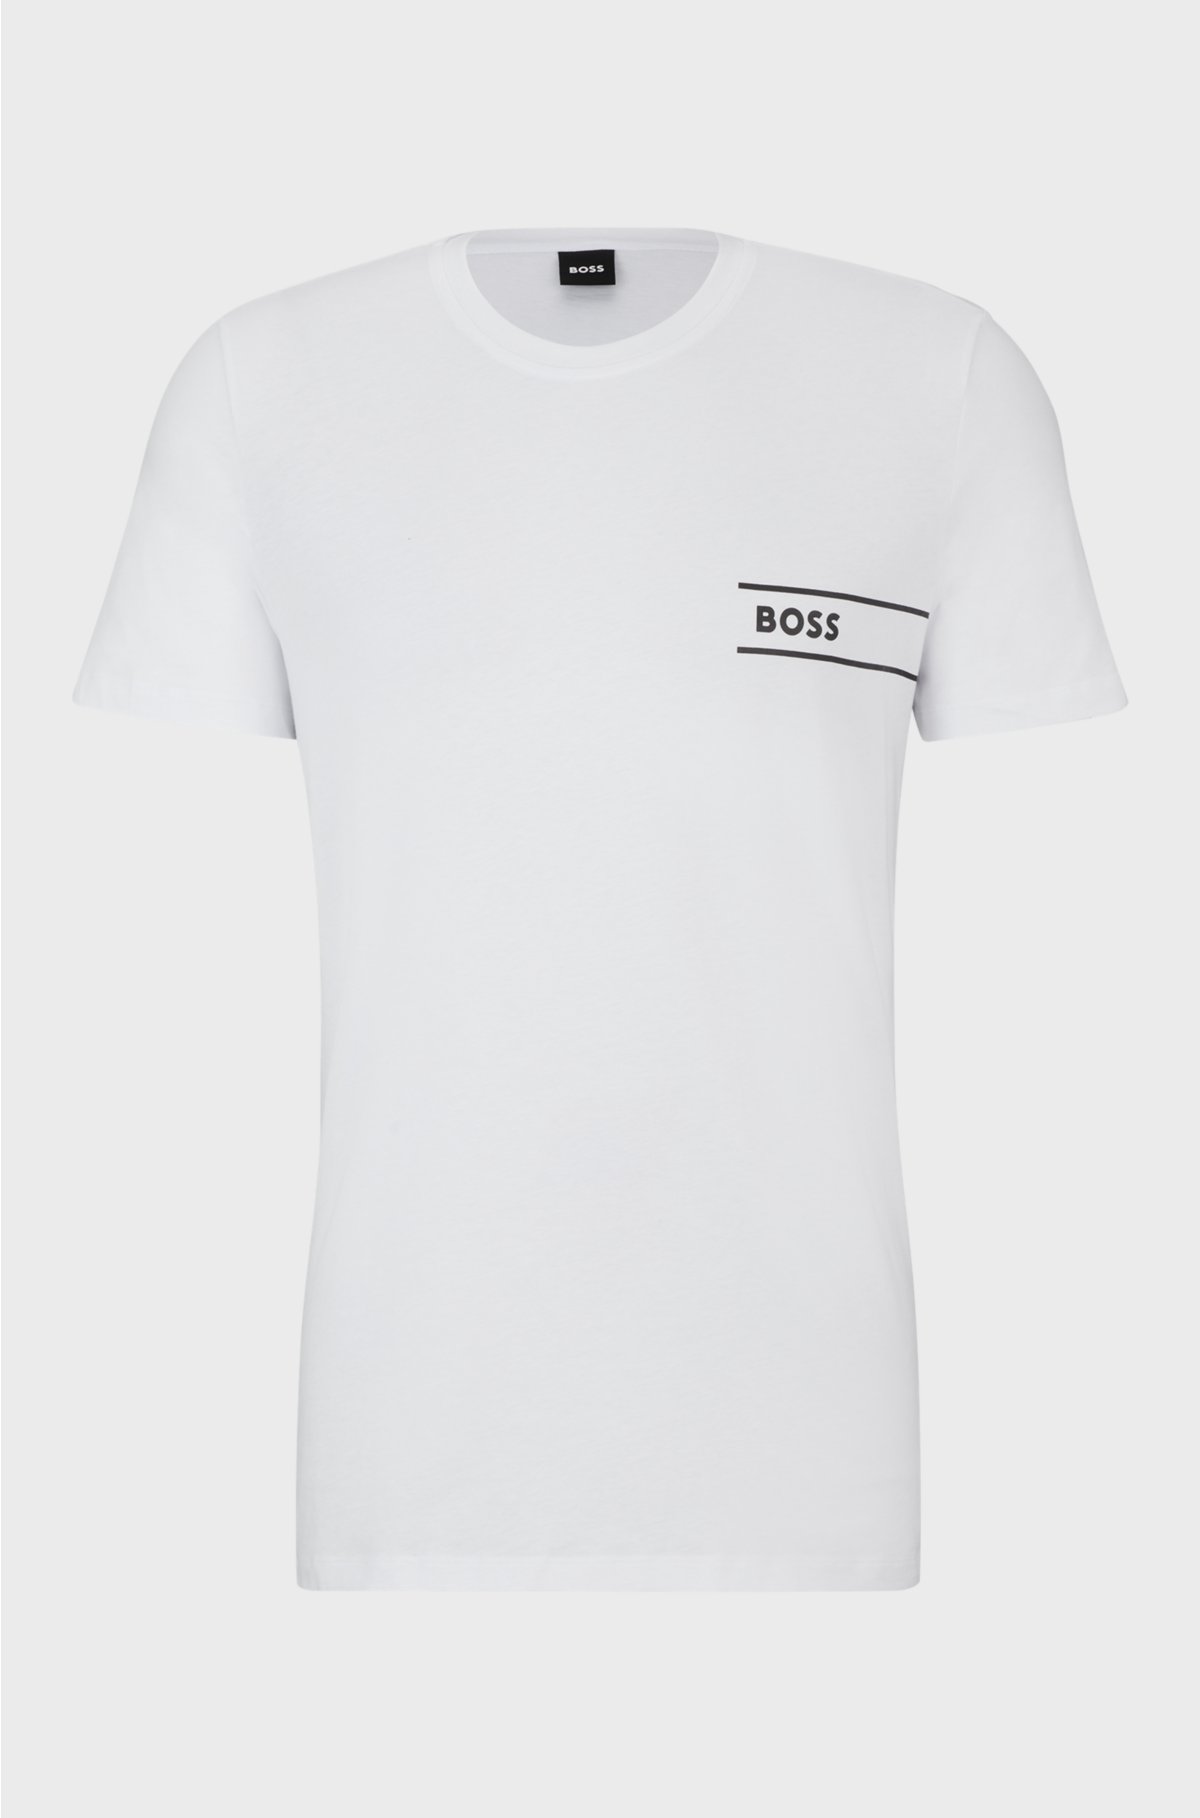 Cotton-jersey underwear T-shirt with logo print, White